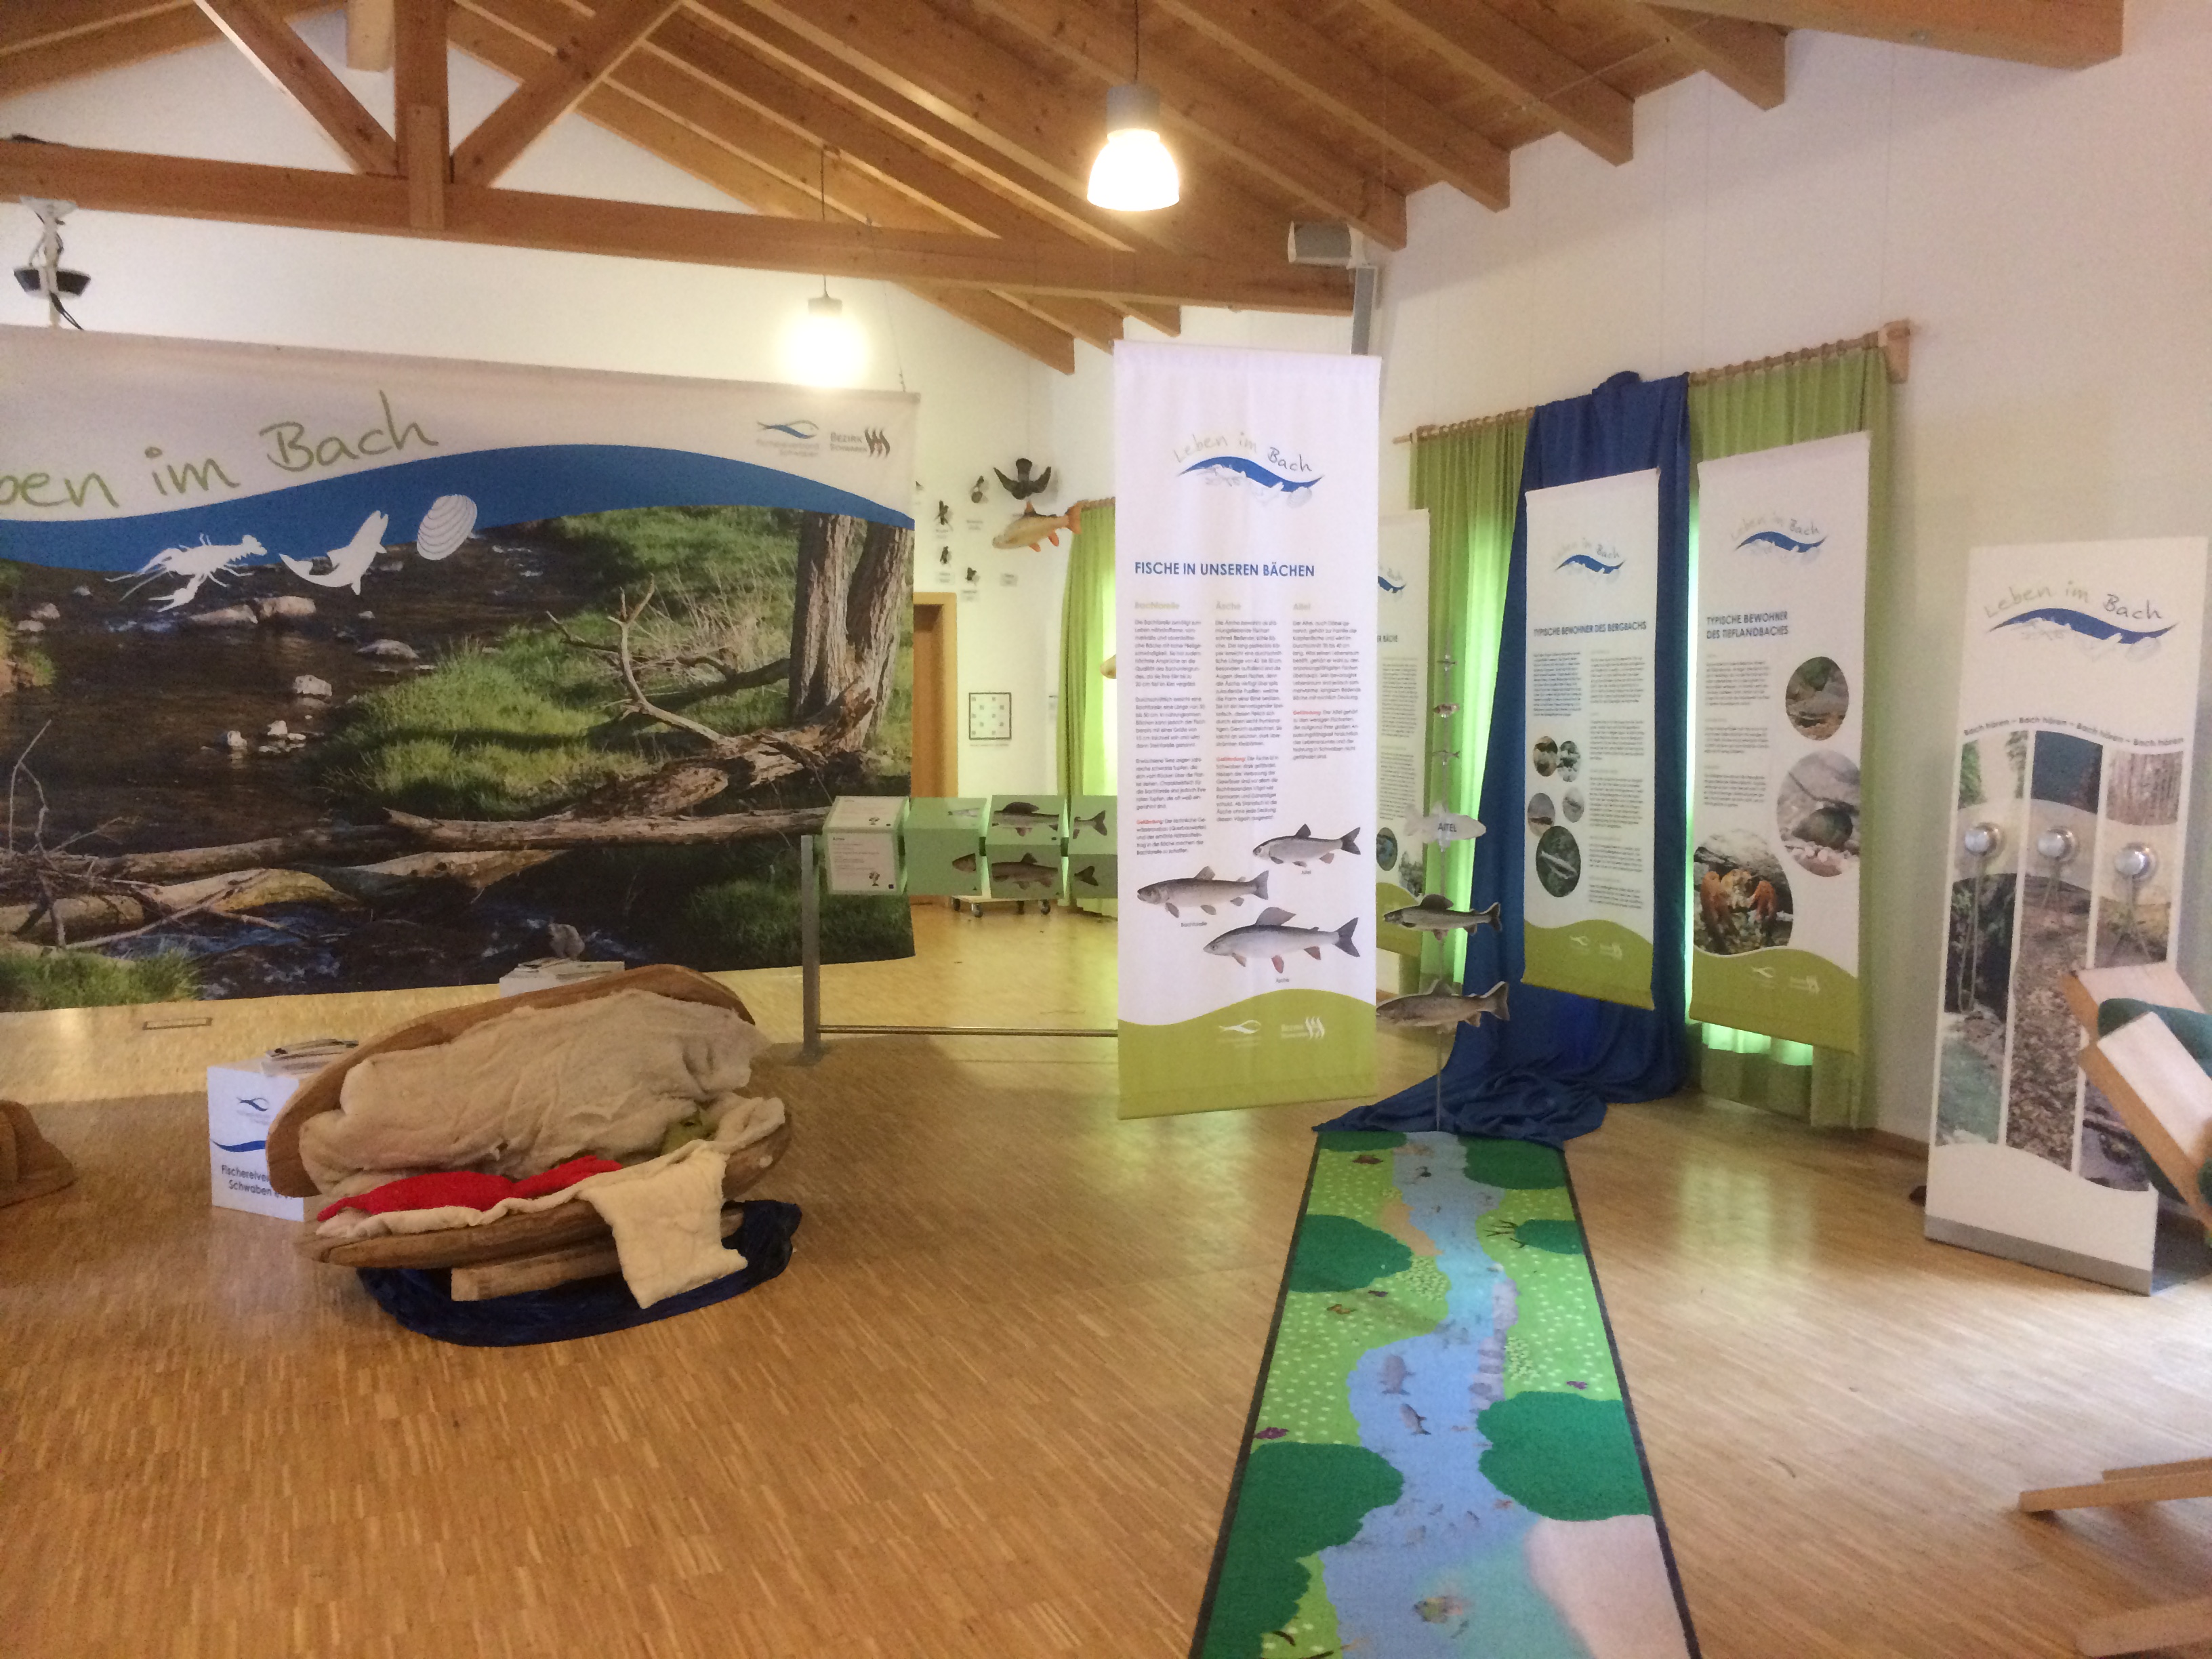 Blick in die Ausstellung Leben im Bach im Walderlebniszentrum Ziegelwies in Füssen